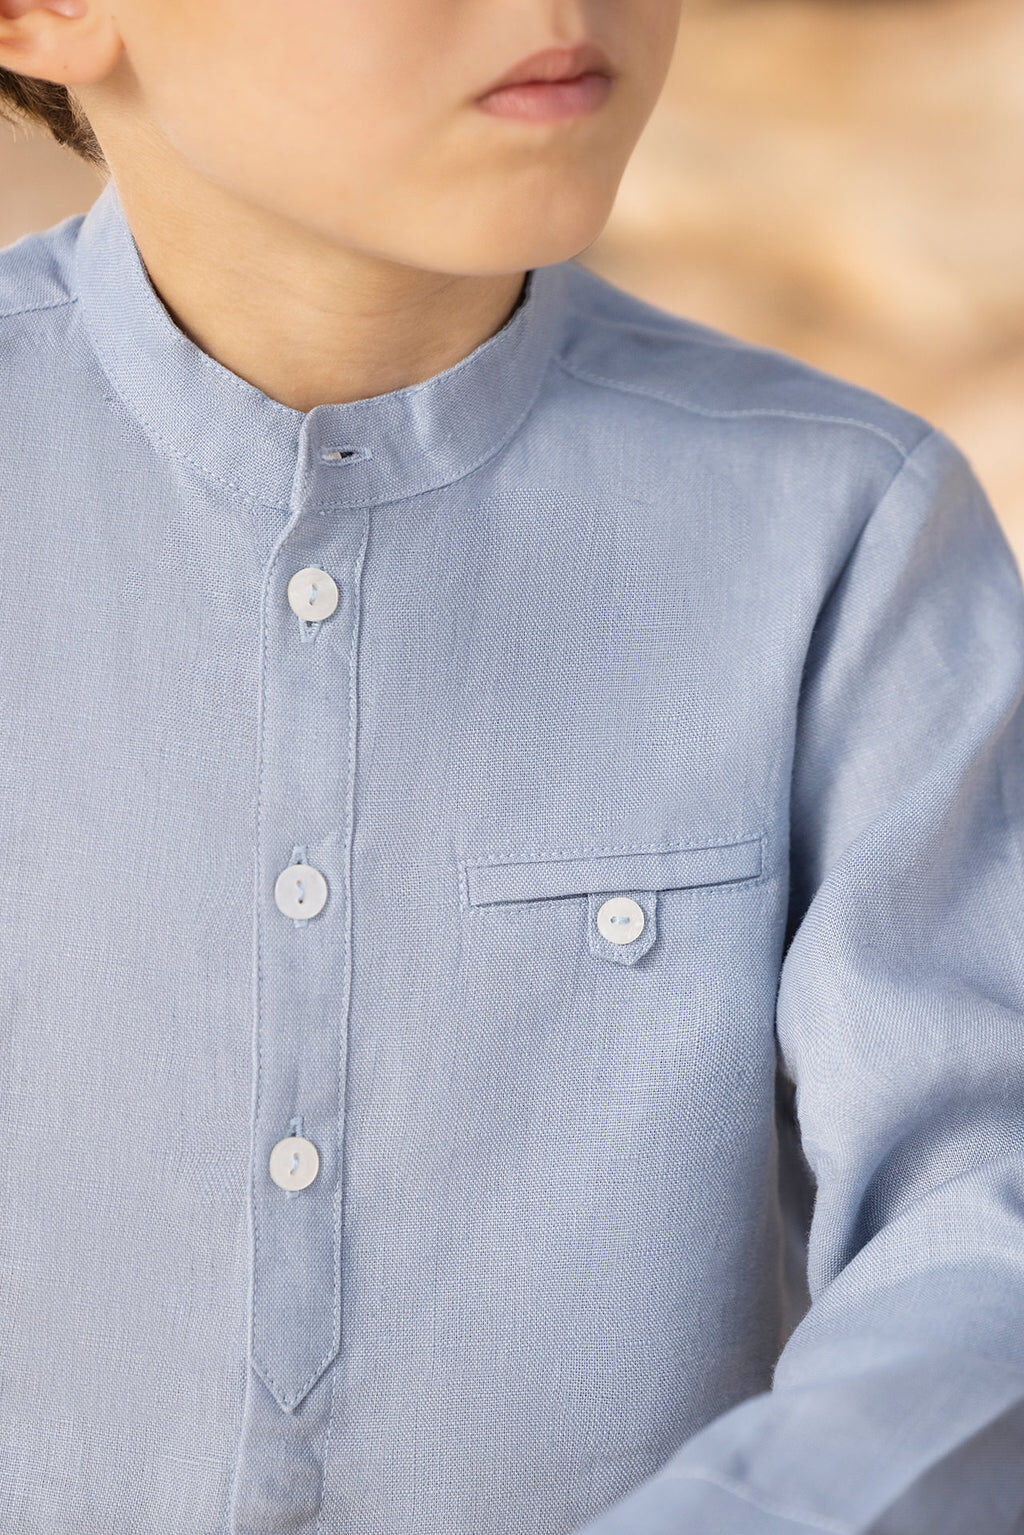 Shirt - Cobalt linen long sleeves